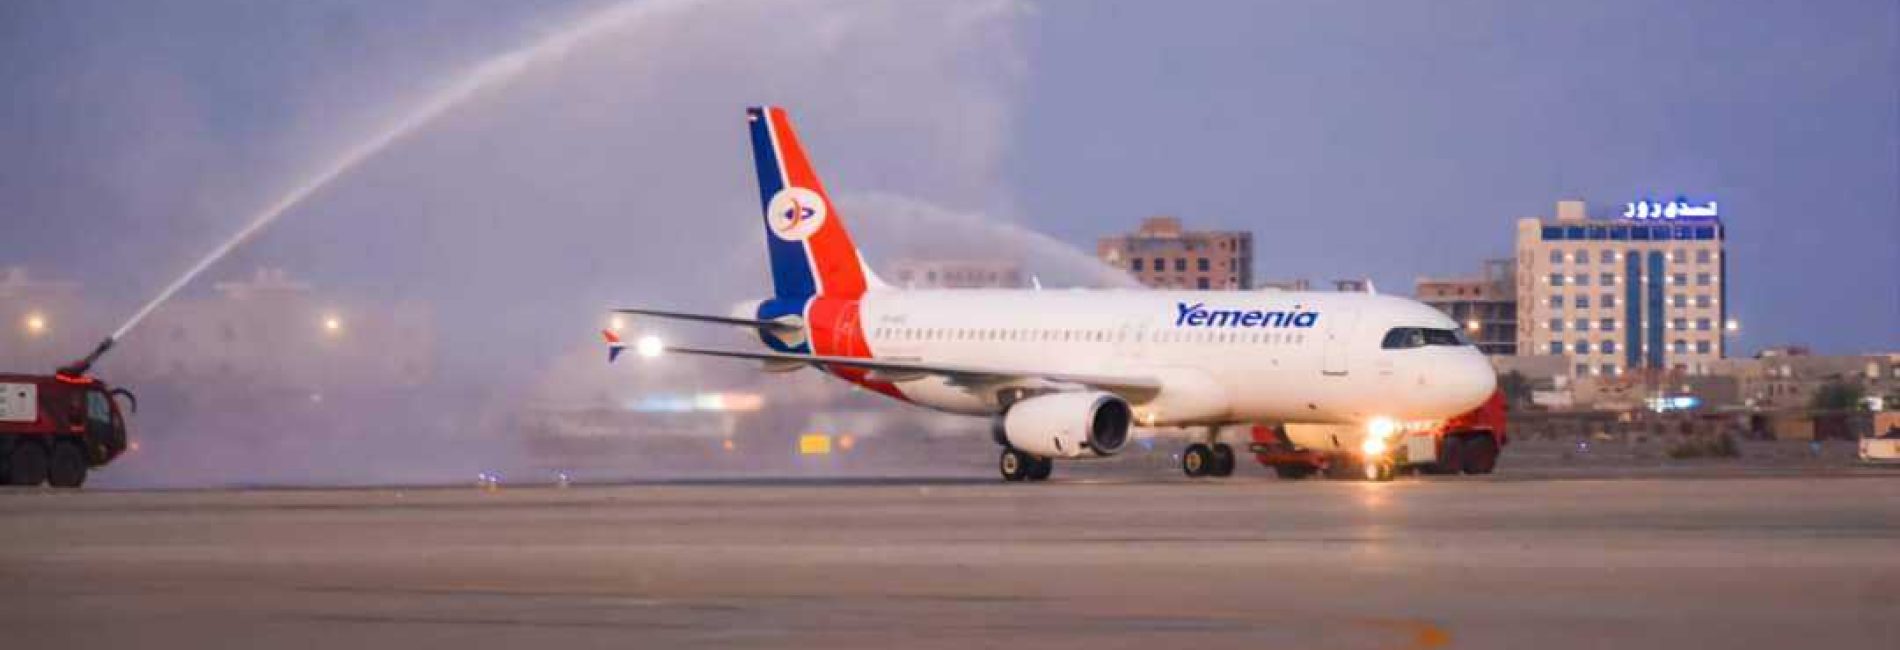 وصول طائرة اليمنية الجديدة (مملكة سبأ) إلى مطار عدن.